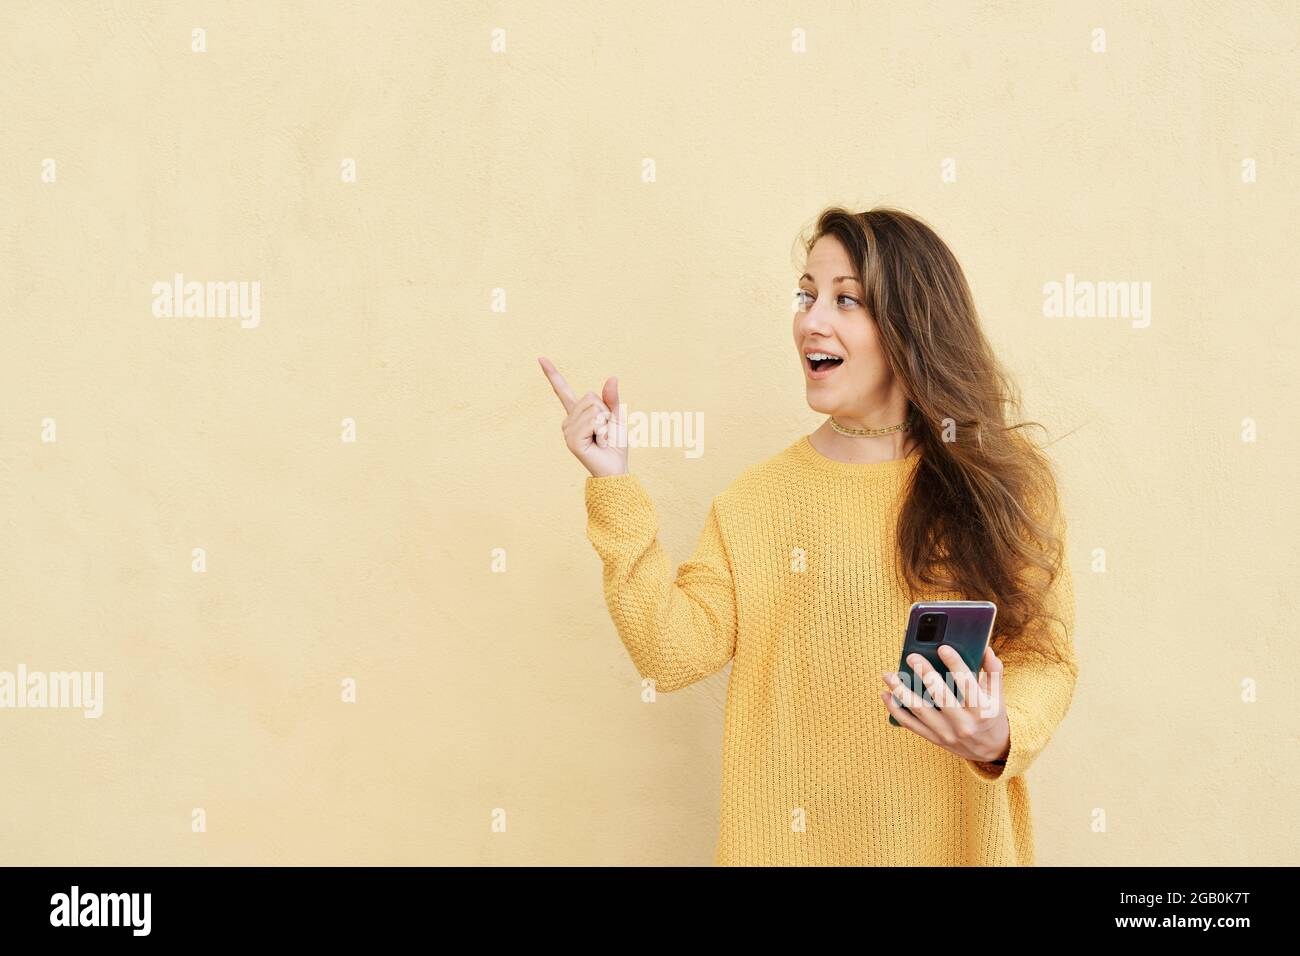 Frau mit einer aufgeschreckte Geste und einem Smartphone, das auf einen gelben Hintergrund zeigt, um Platz zu kopieren Stockfoto